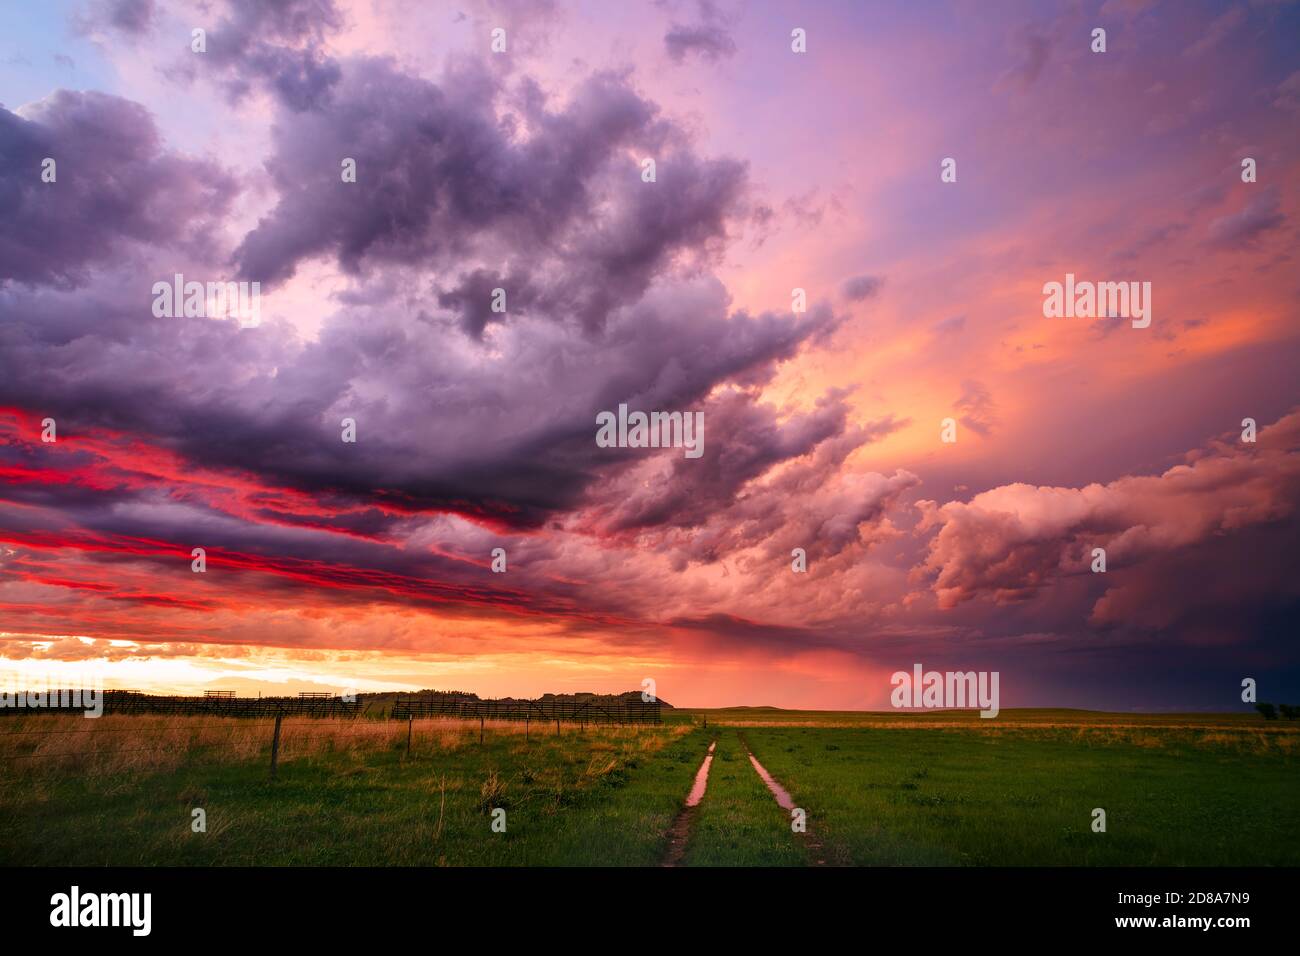 Hinter einem aufziehenden Sturm über der malerischen Landschaft von South Dakota in der Nähe von Camp Crook taucht ein farbenfroher Sonnenuntergang auf. Stockfoto